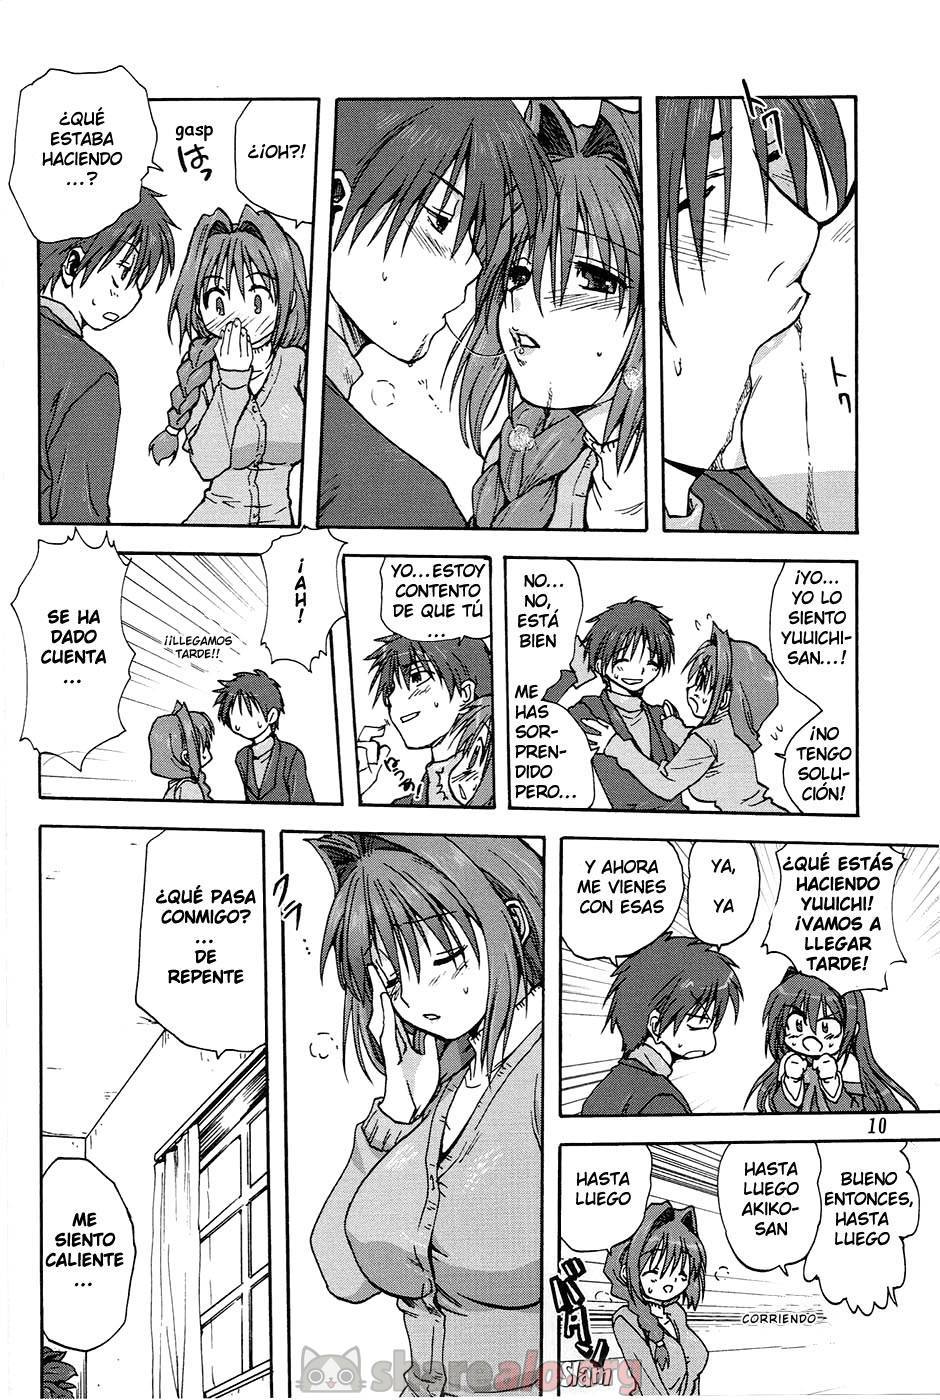 Akiko-san to Issho (Kanon XXX) - 11 - Comics Porno - Hentai Manga - Cartoon XXX